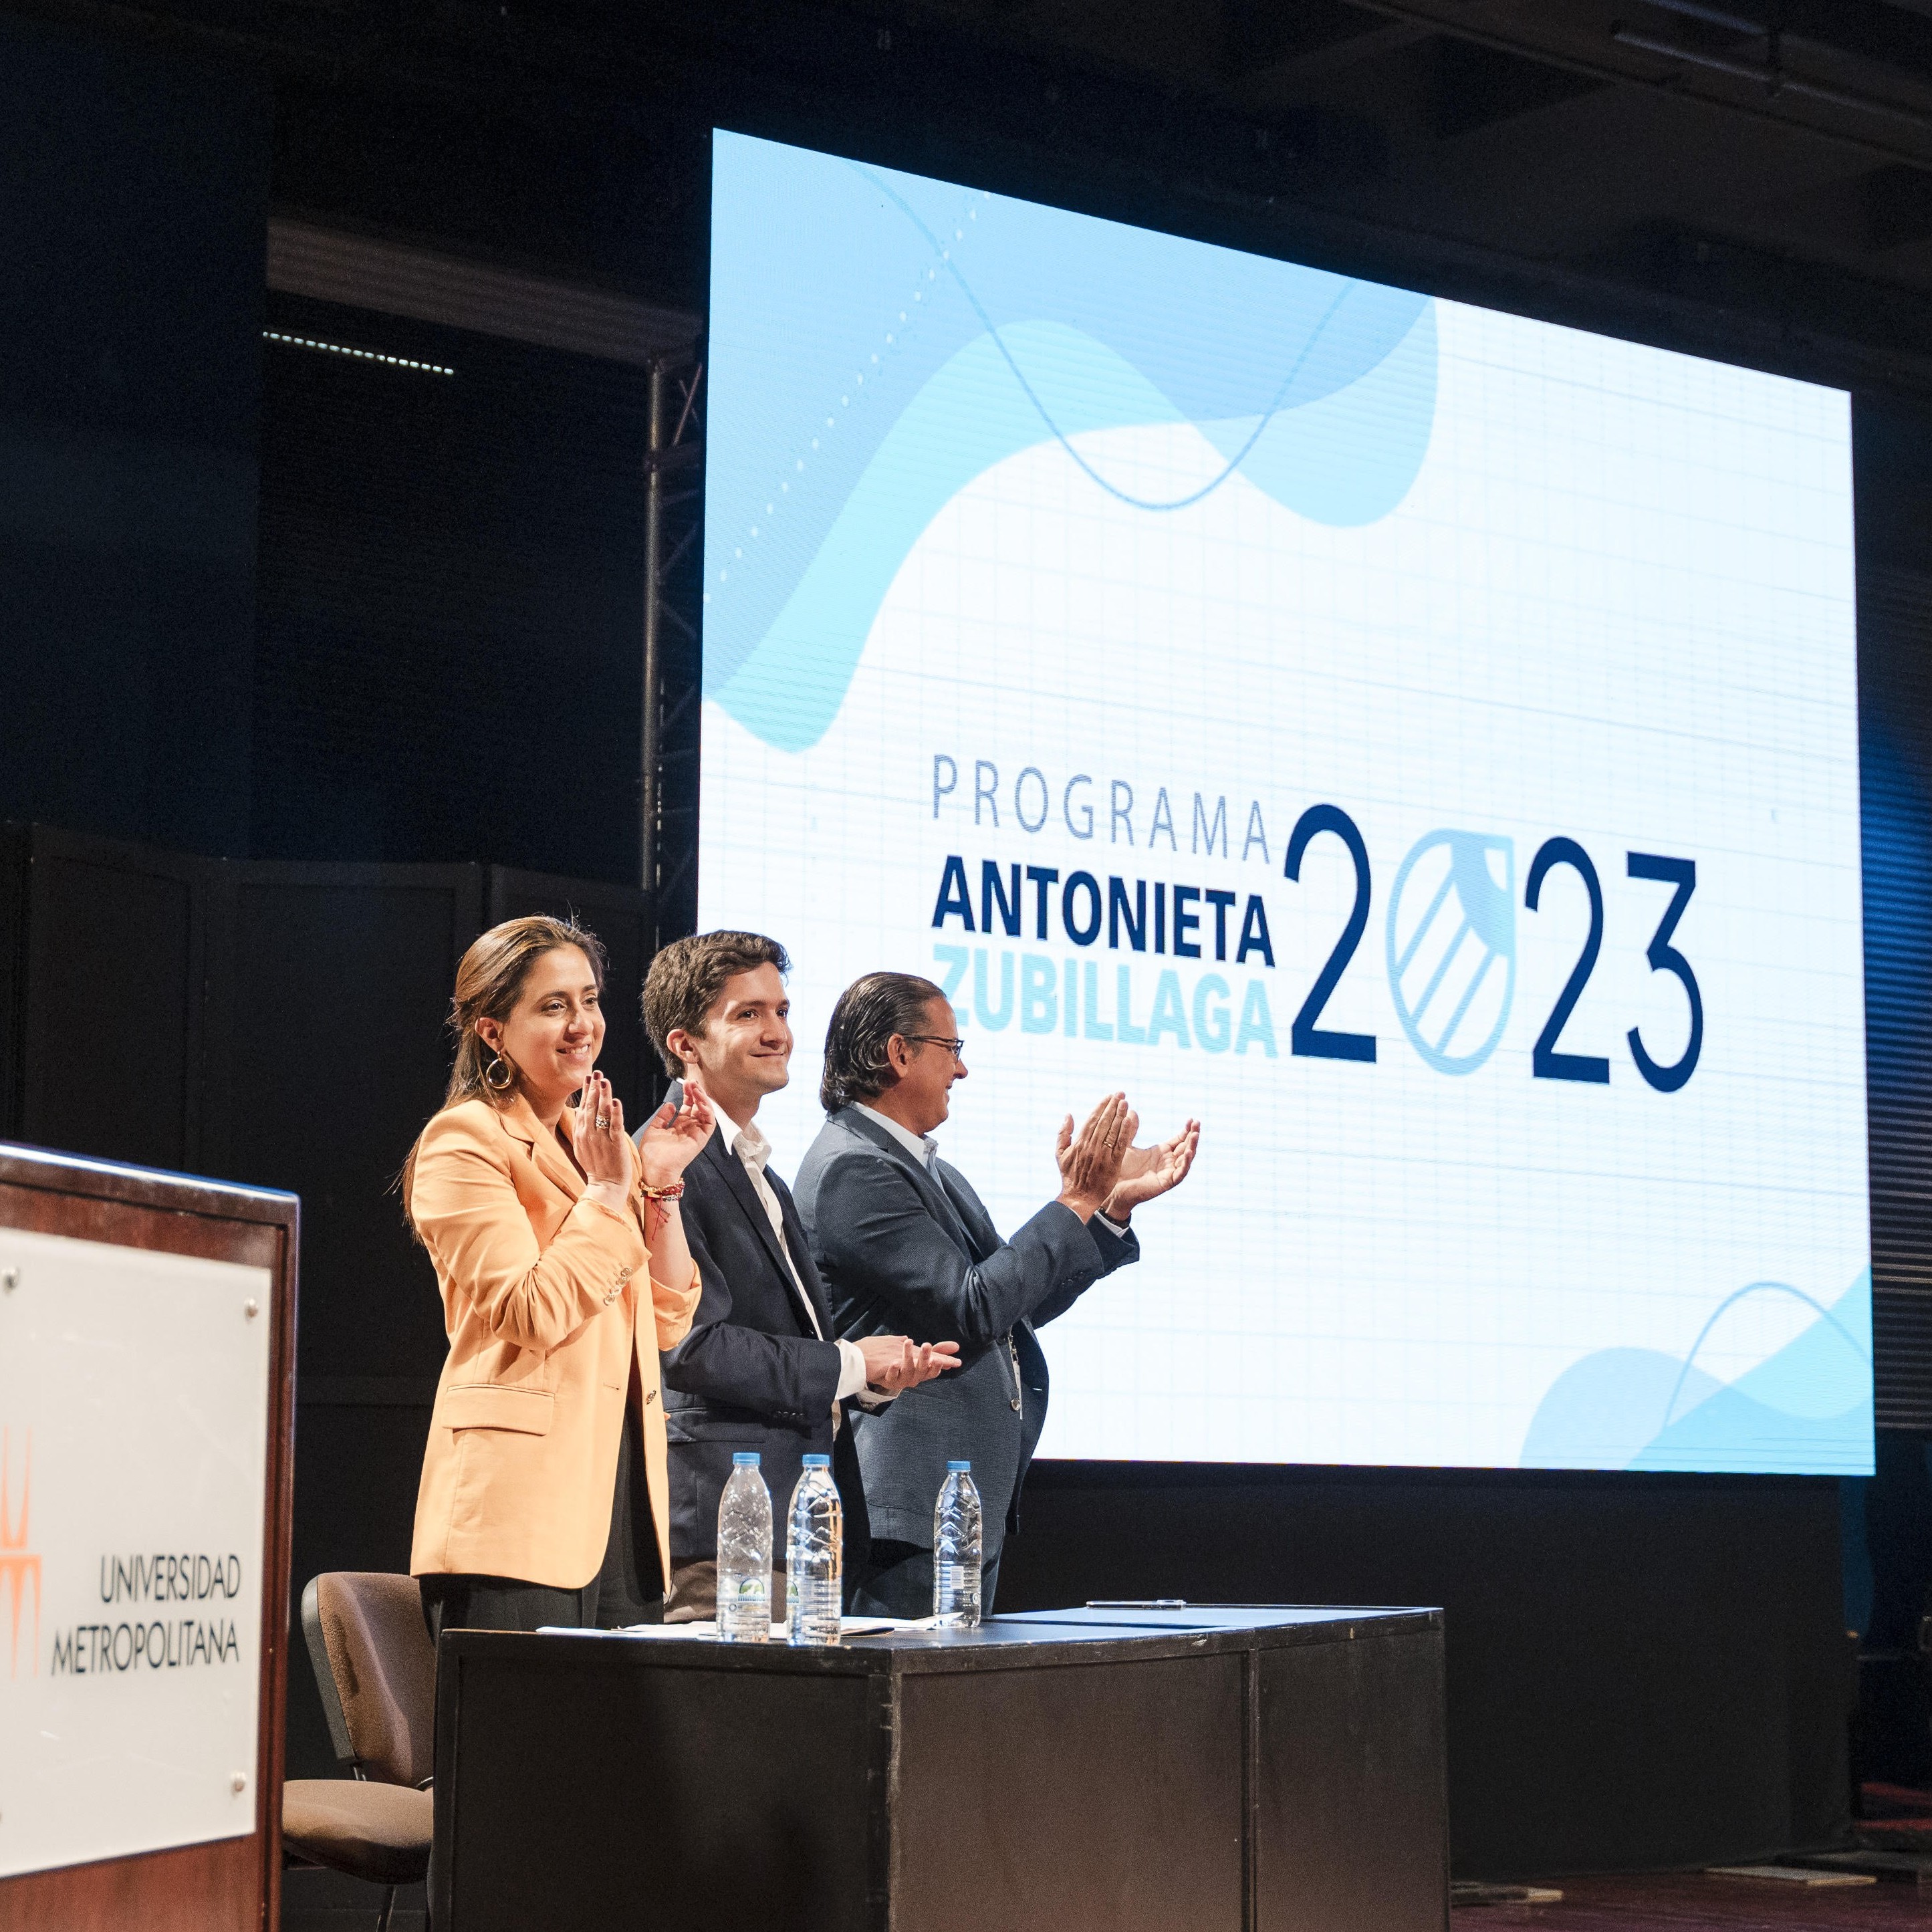 Diario Frontera, Frontera Digital,  FARMATODO, Entretenimiento, ,Farmatodo premia la excelencia en la
 8va edición del Programa Antonieta Zubillaga